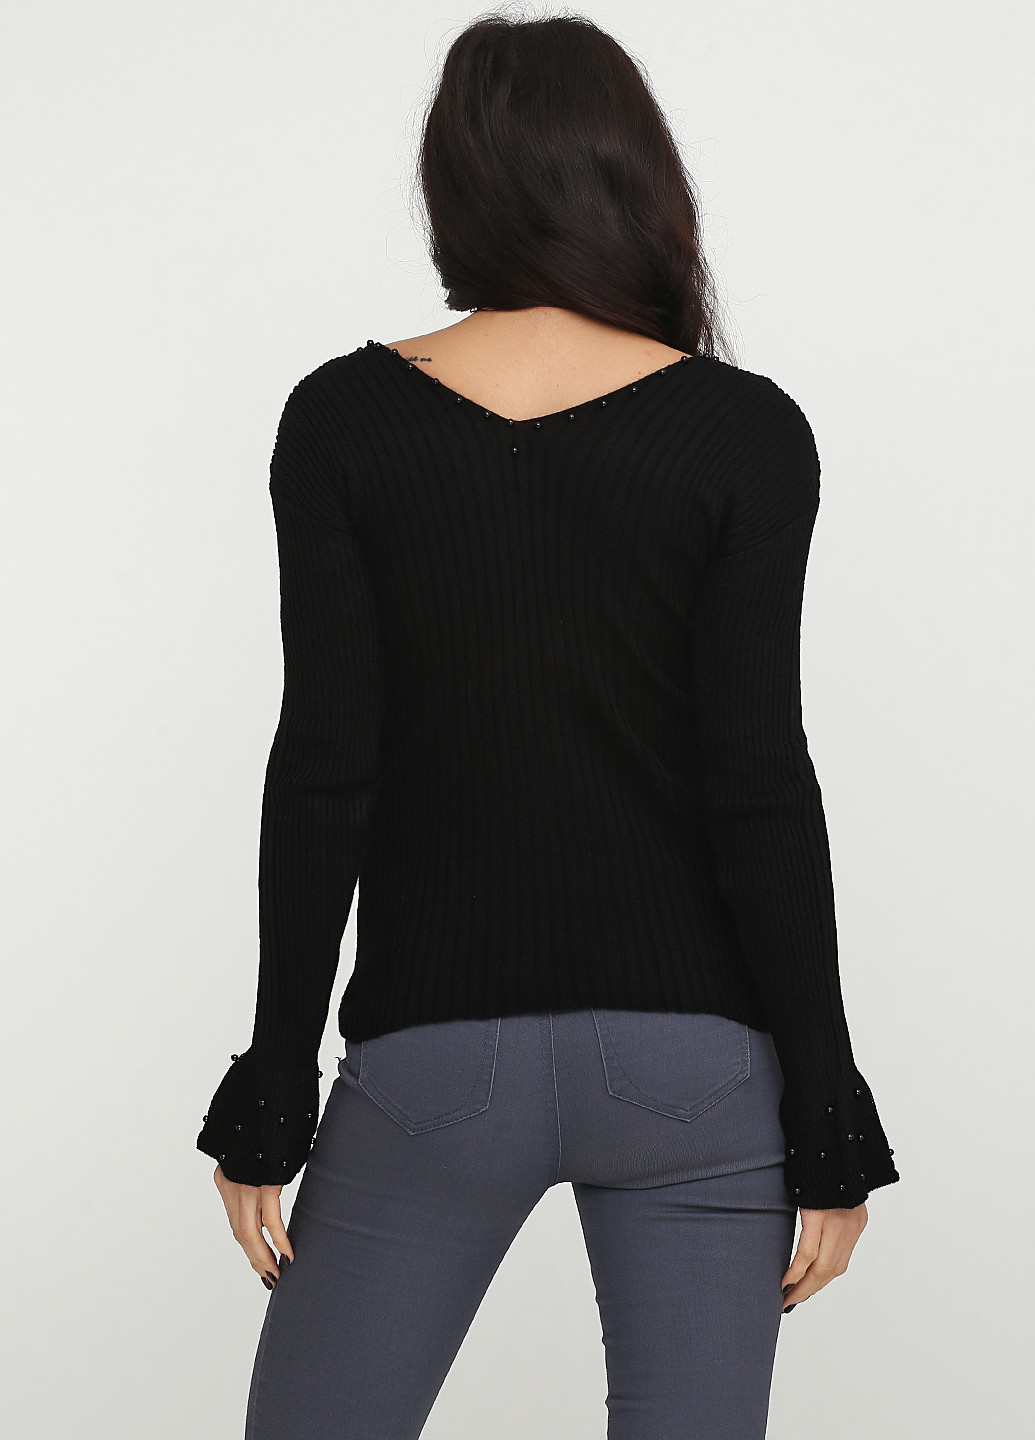 Черный демисезонный пуловер пуловер Babylon